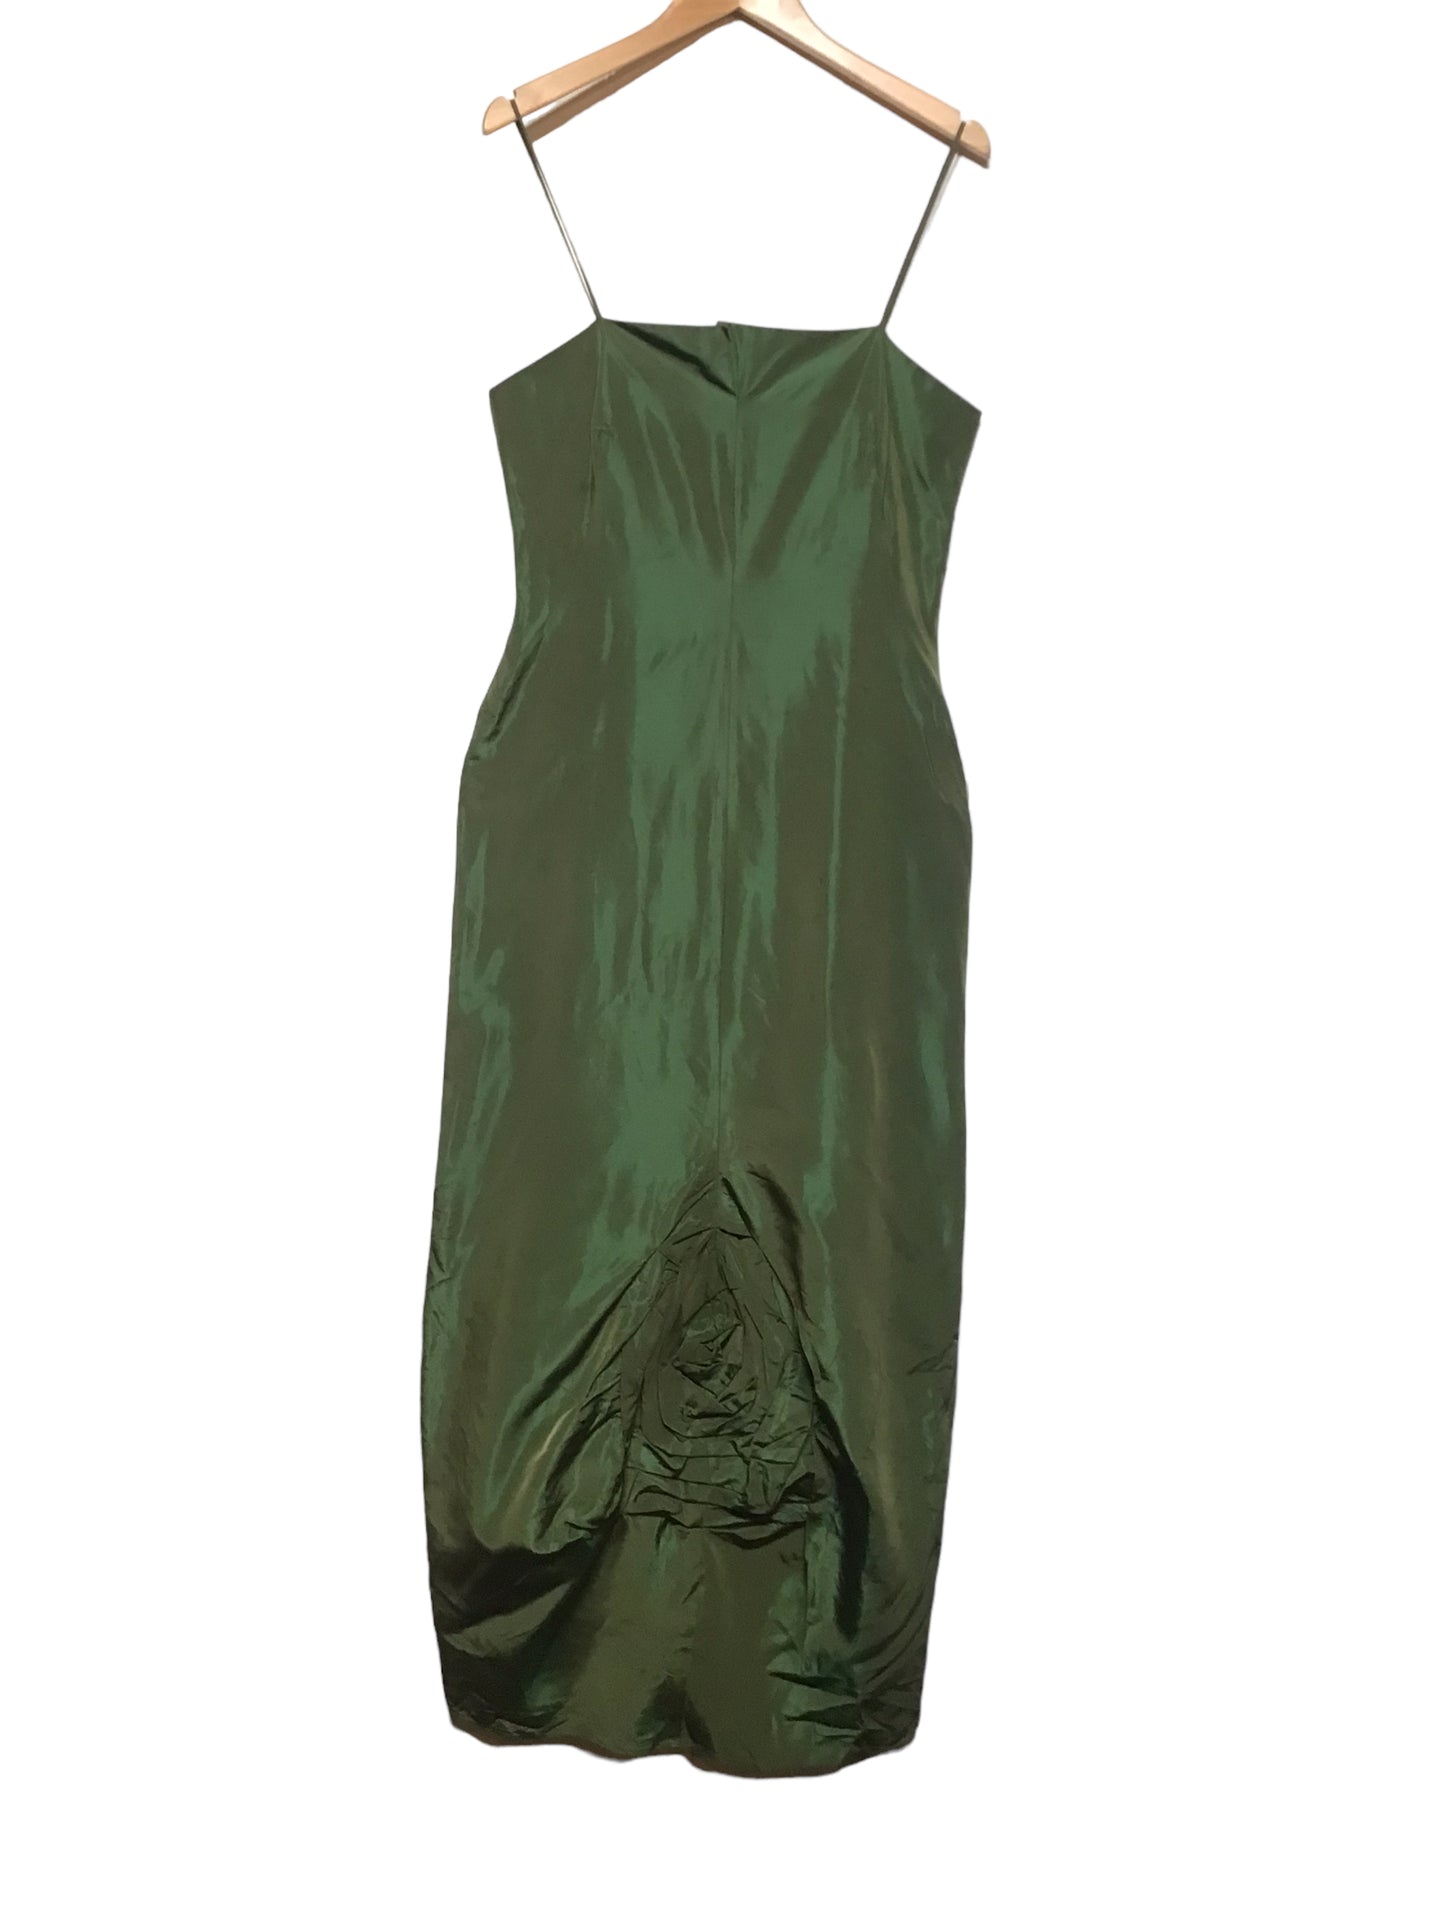 Green Metallic Dress (Size L)